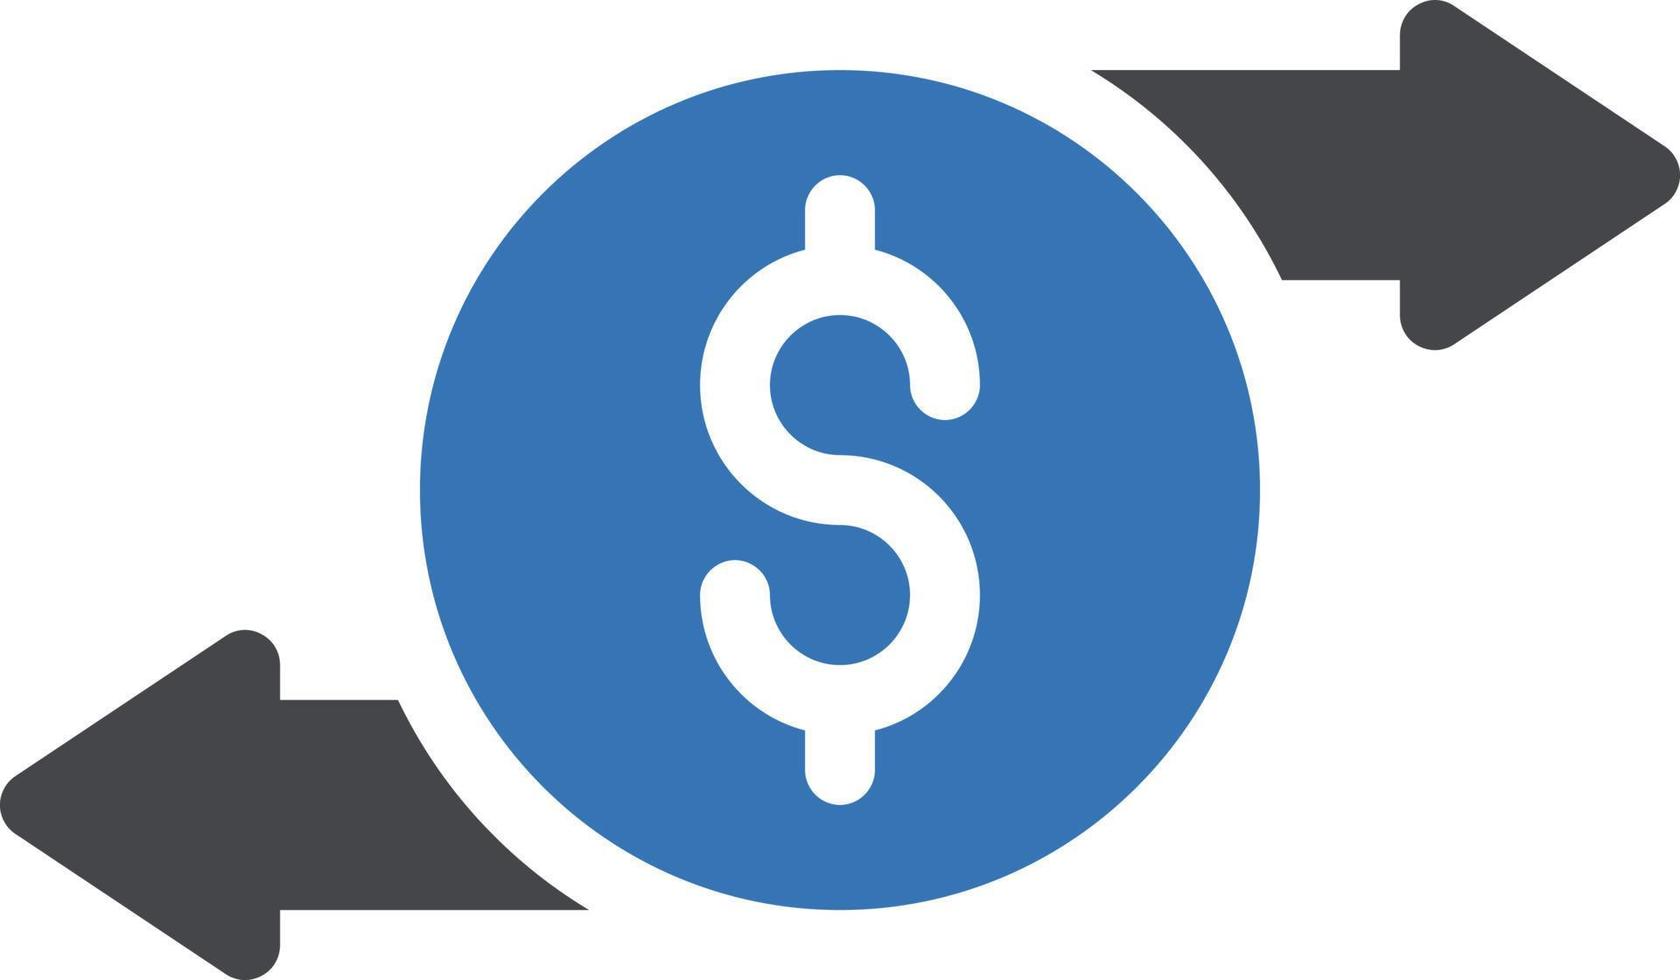 illustrazione vettoriale del dollaro su uno sfondo. simboli di qualità premium. icone vettoriali per il concetto e la progettazione grafica.